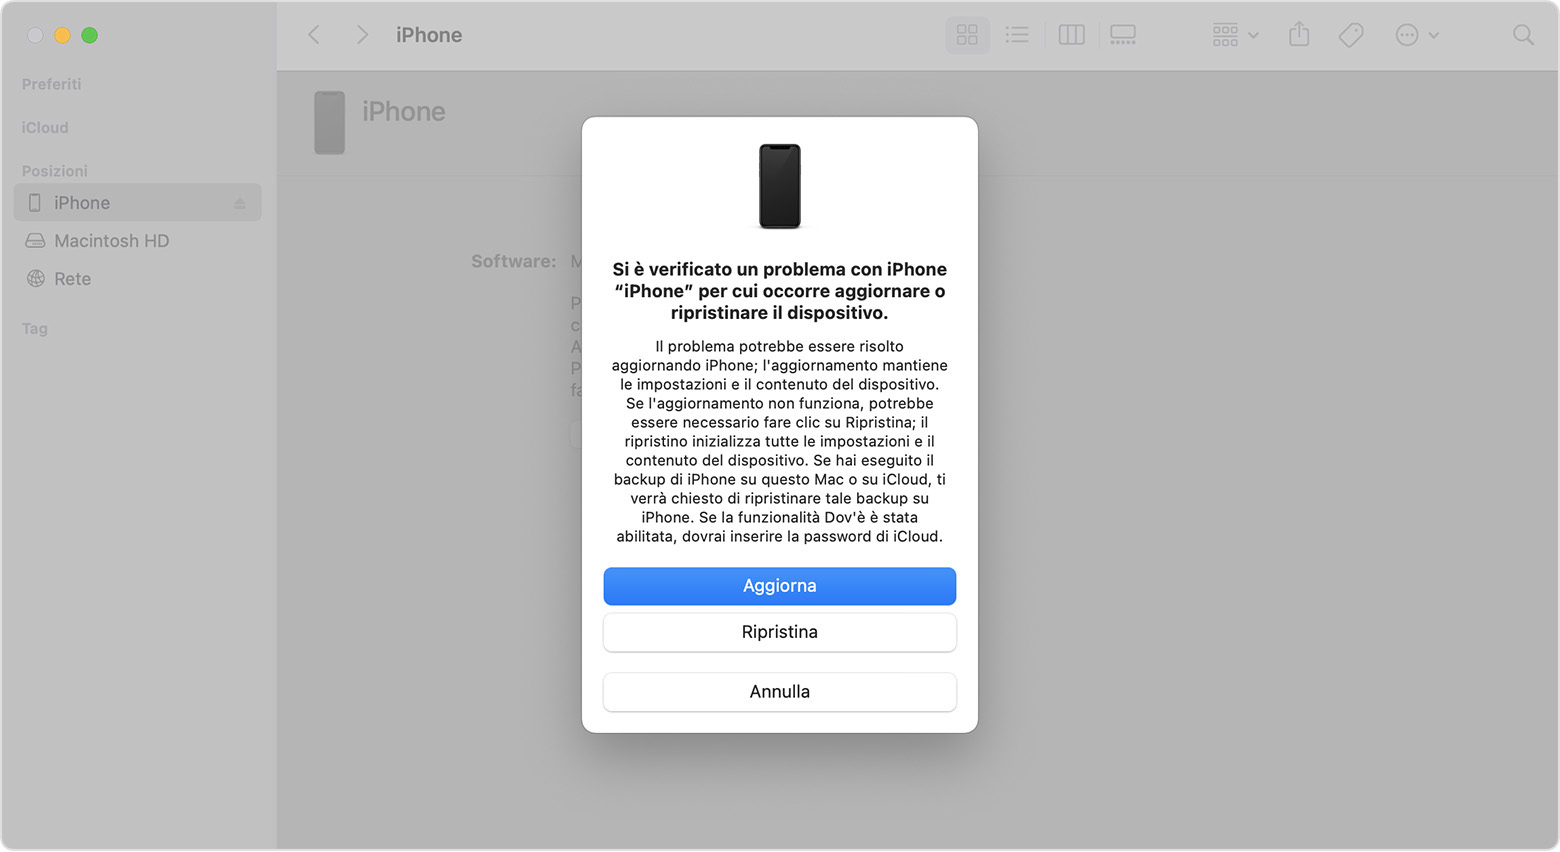 Finestra del Finder che mostra un messaggio con la possibilità di aggiornare o ripristinare l'iPhone. È selezionata l'opzione Aggiorna.